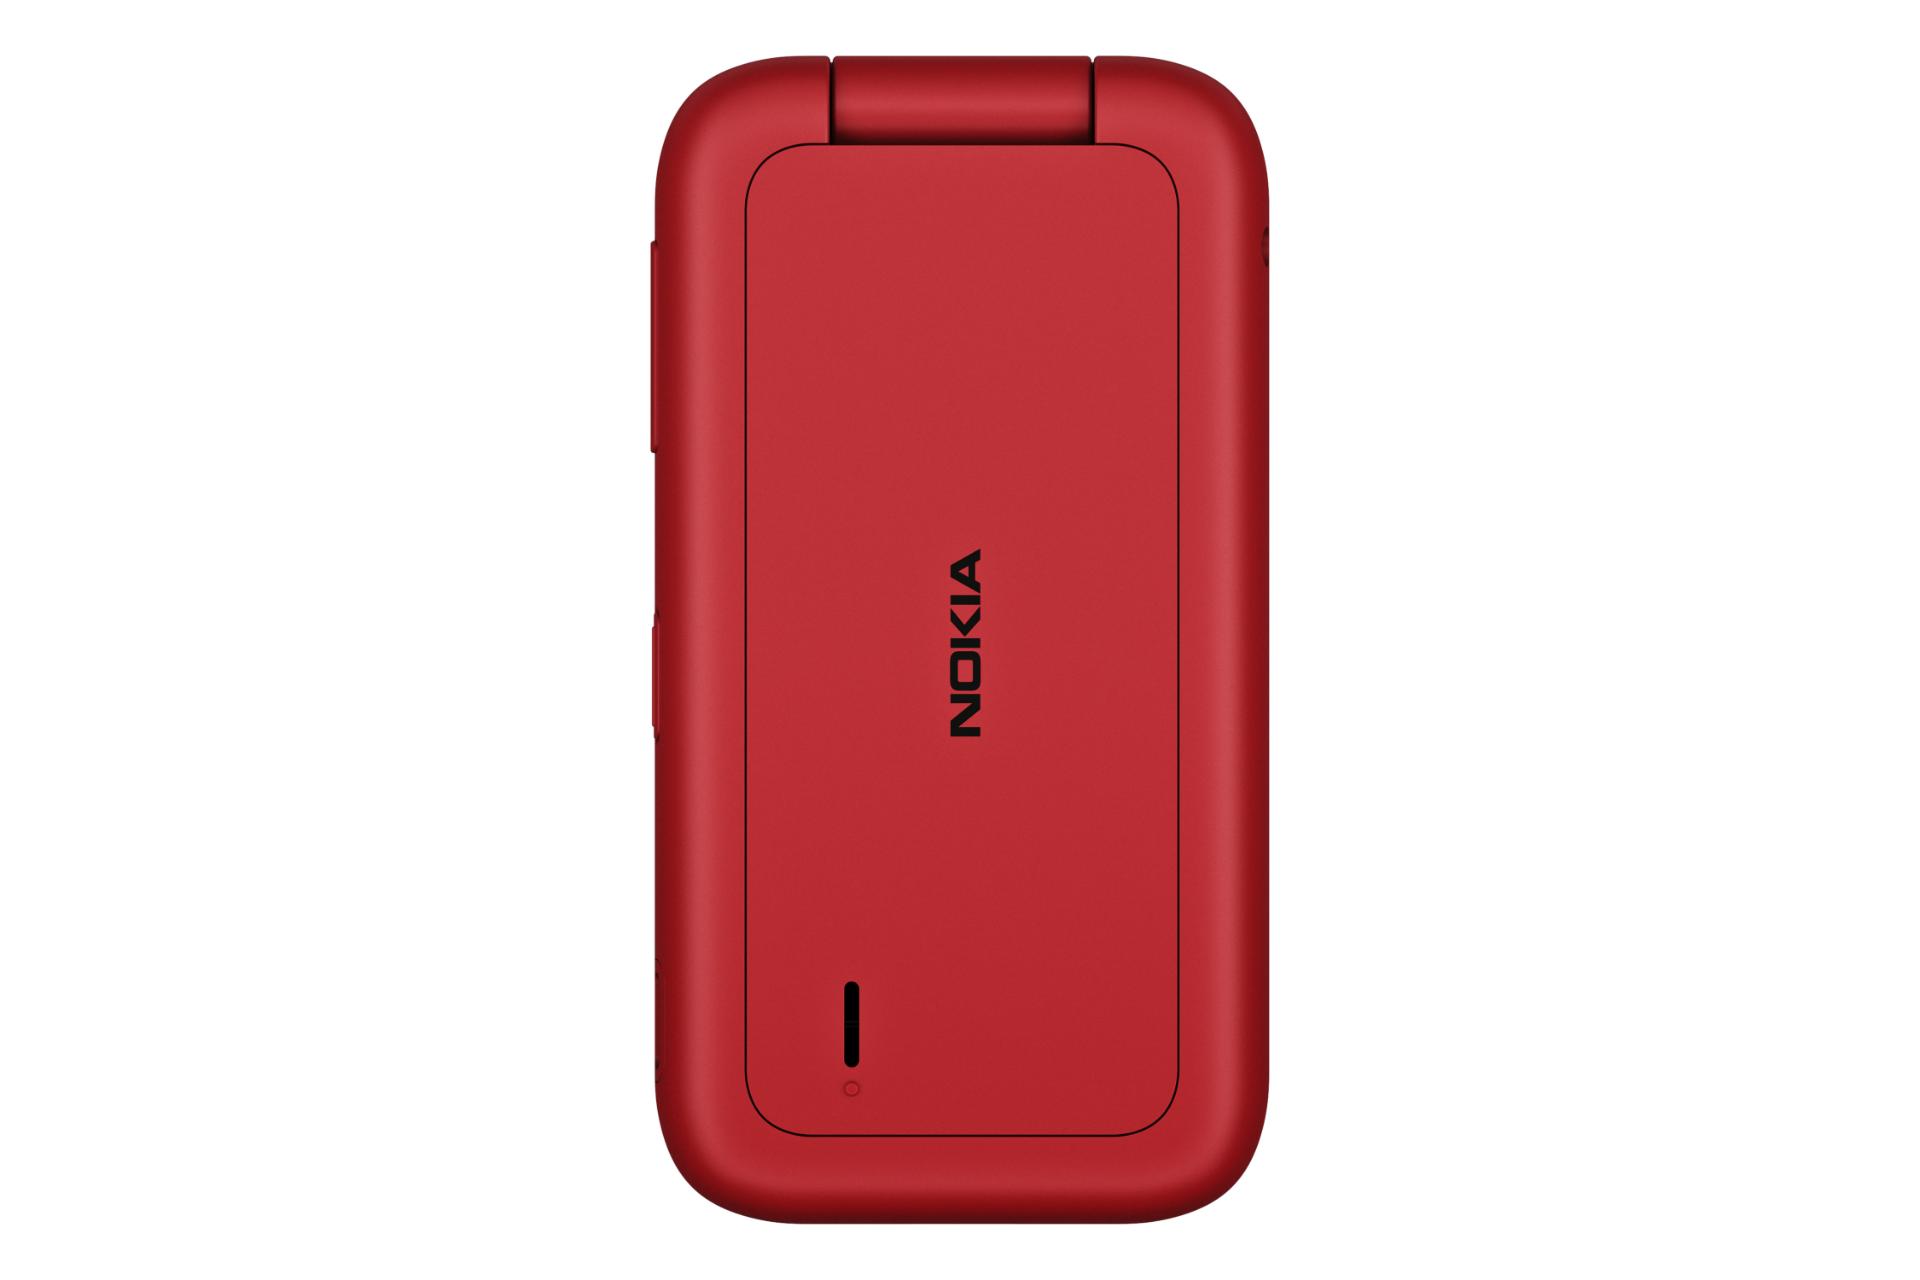 پنل پشت گوشی موبایل نوکیا Nokia 2780 Flip قرمز